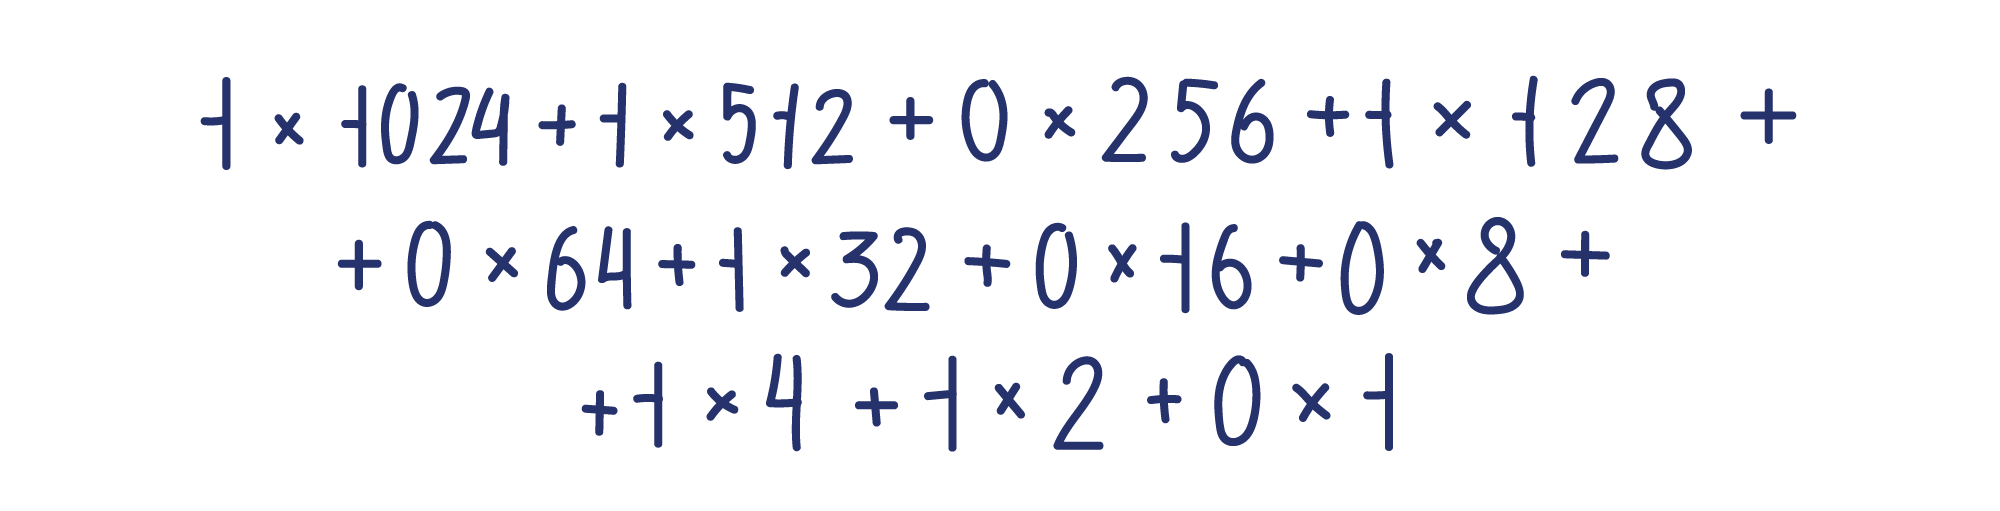 1×1024+1×512+0×256+ +1×128+0×64+1×32+0×16+ +0×8+1×4+1×2+0×1